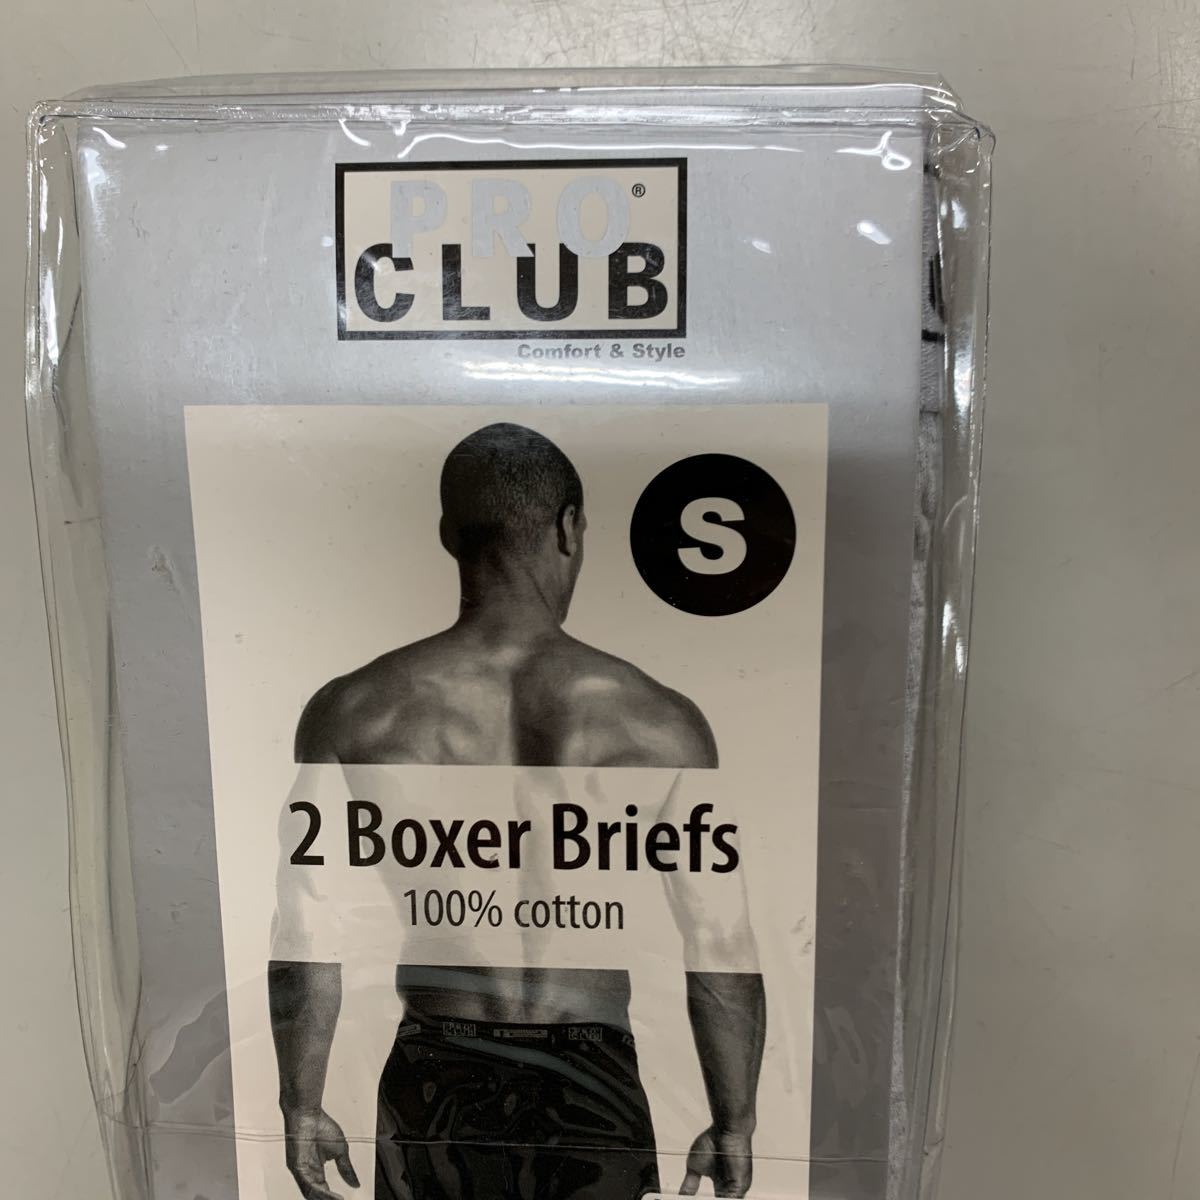 PRO CLUB Pro Club боксеры S размер мужской нижний одежда нижнее белье не использовался новый товар хлопок 100% 2P упаковка комплект 